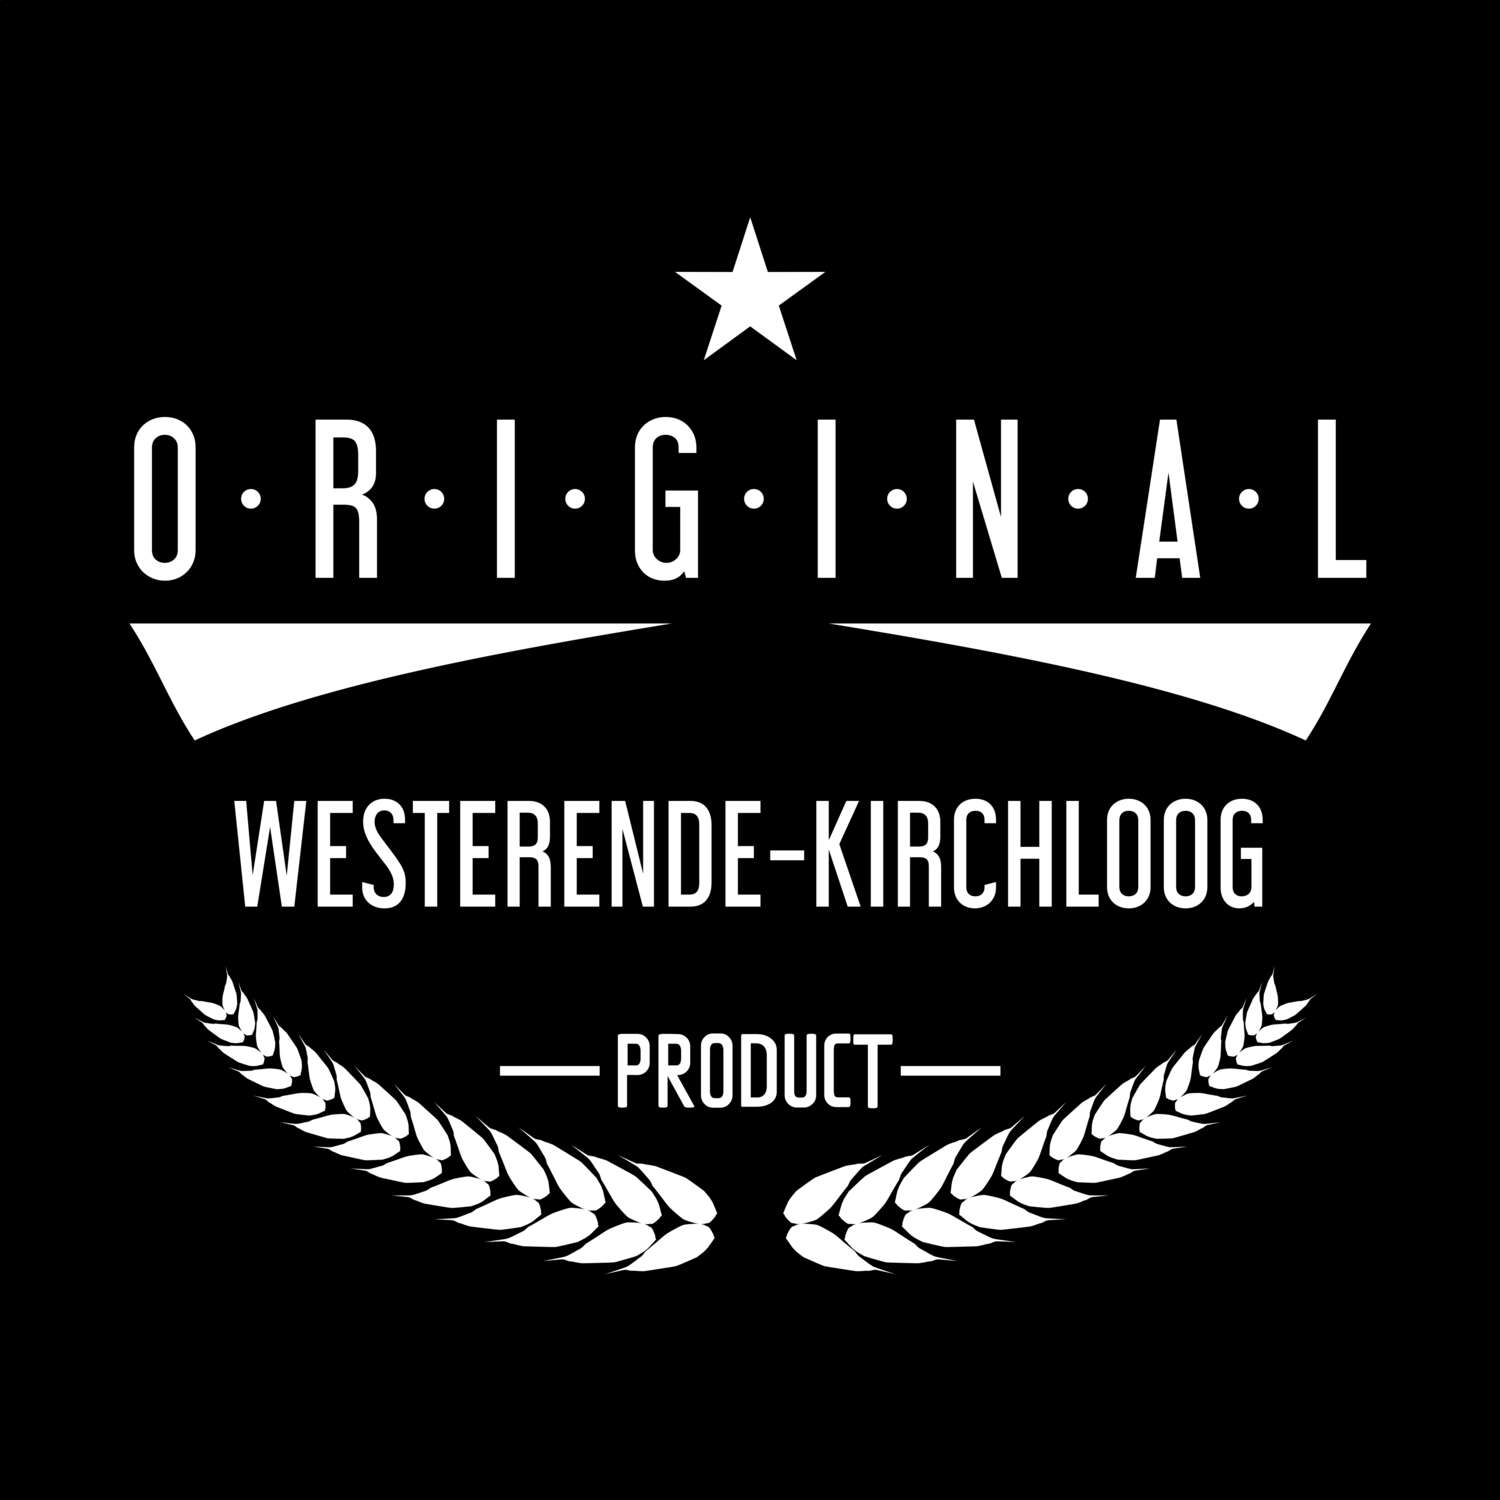 Westerende-Kirchloog T-Shirt »Original Product«